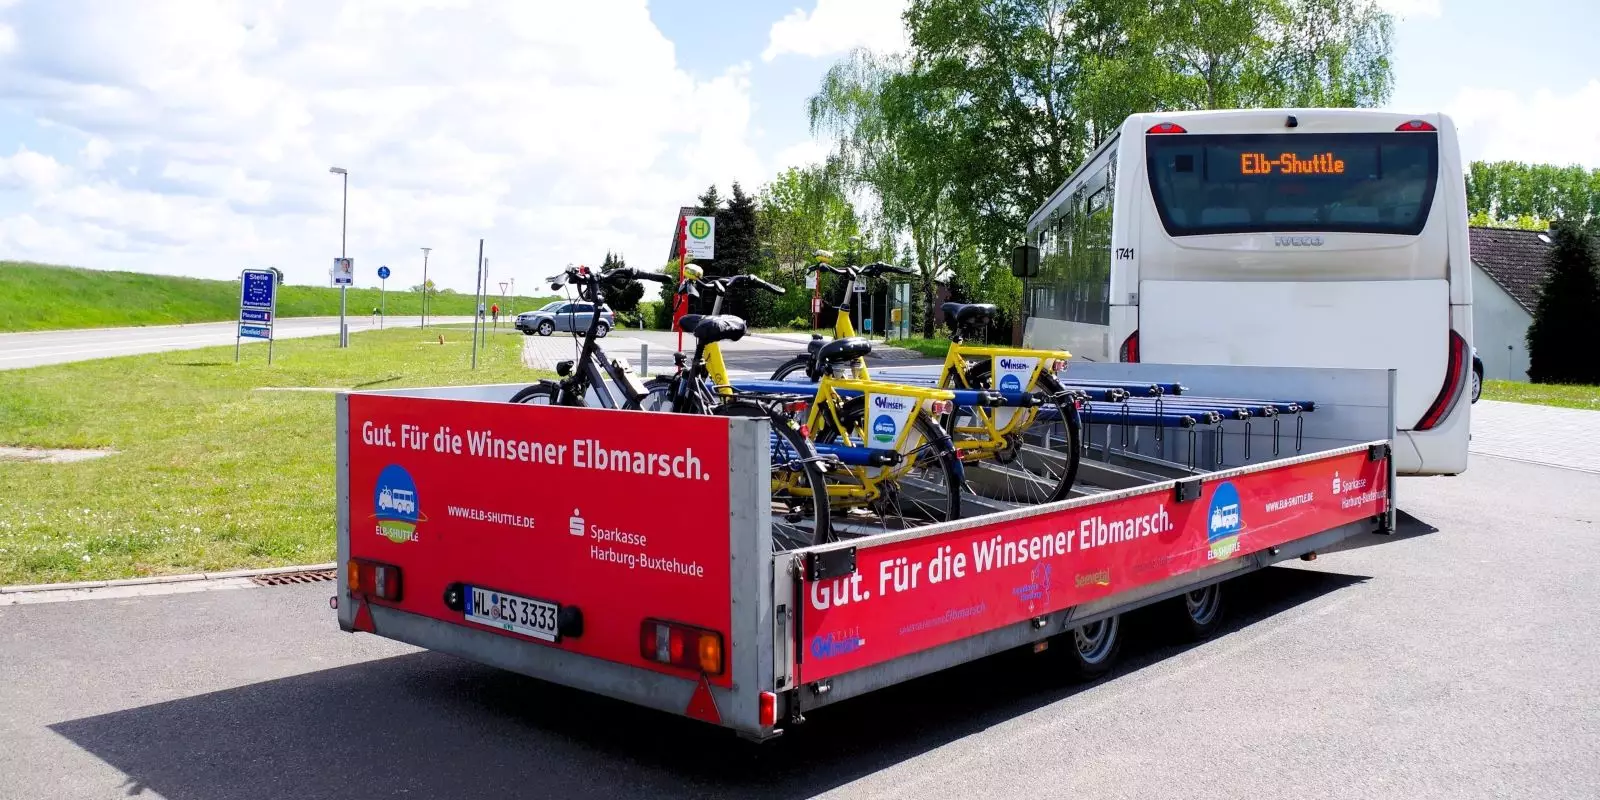 Der-Radwanderbus-ist-wieder-unterwegs-Elb-Shuttle-startet-am-1-Mai-in-die-Saison